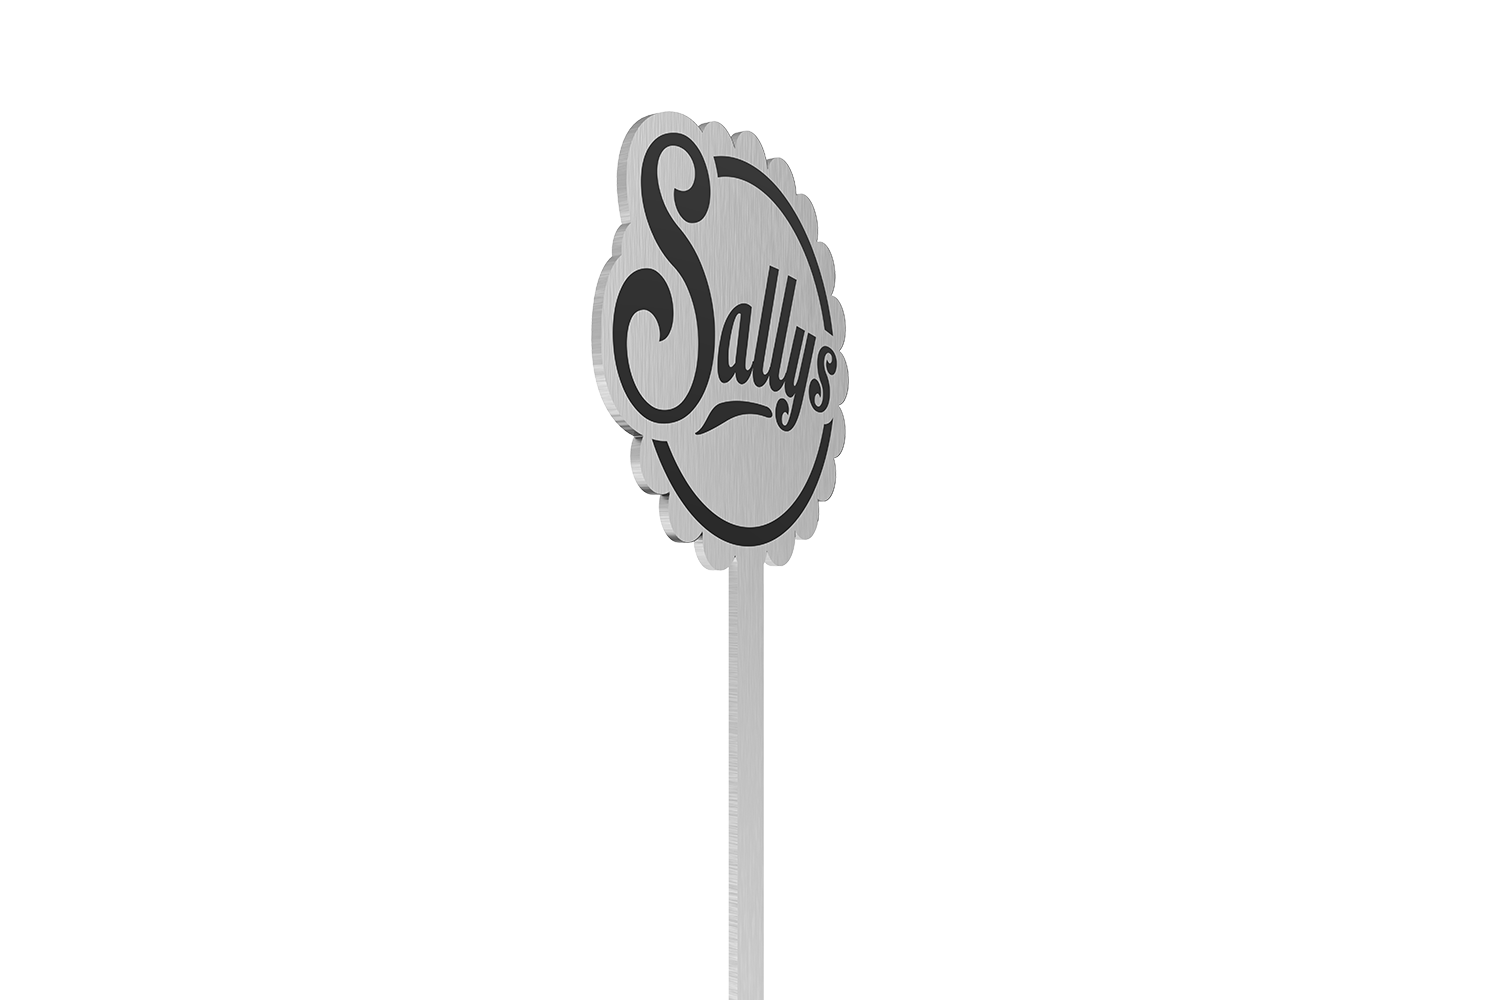 Das Sallys Logo auf dem silbernen Kuchentester